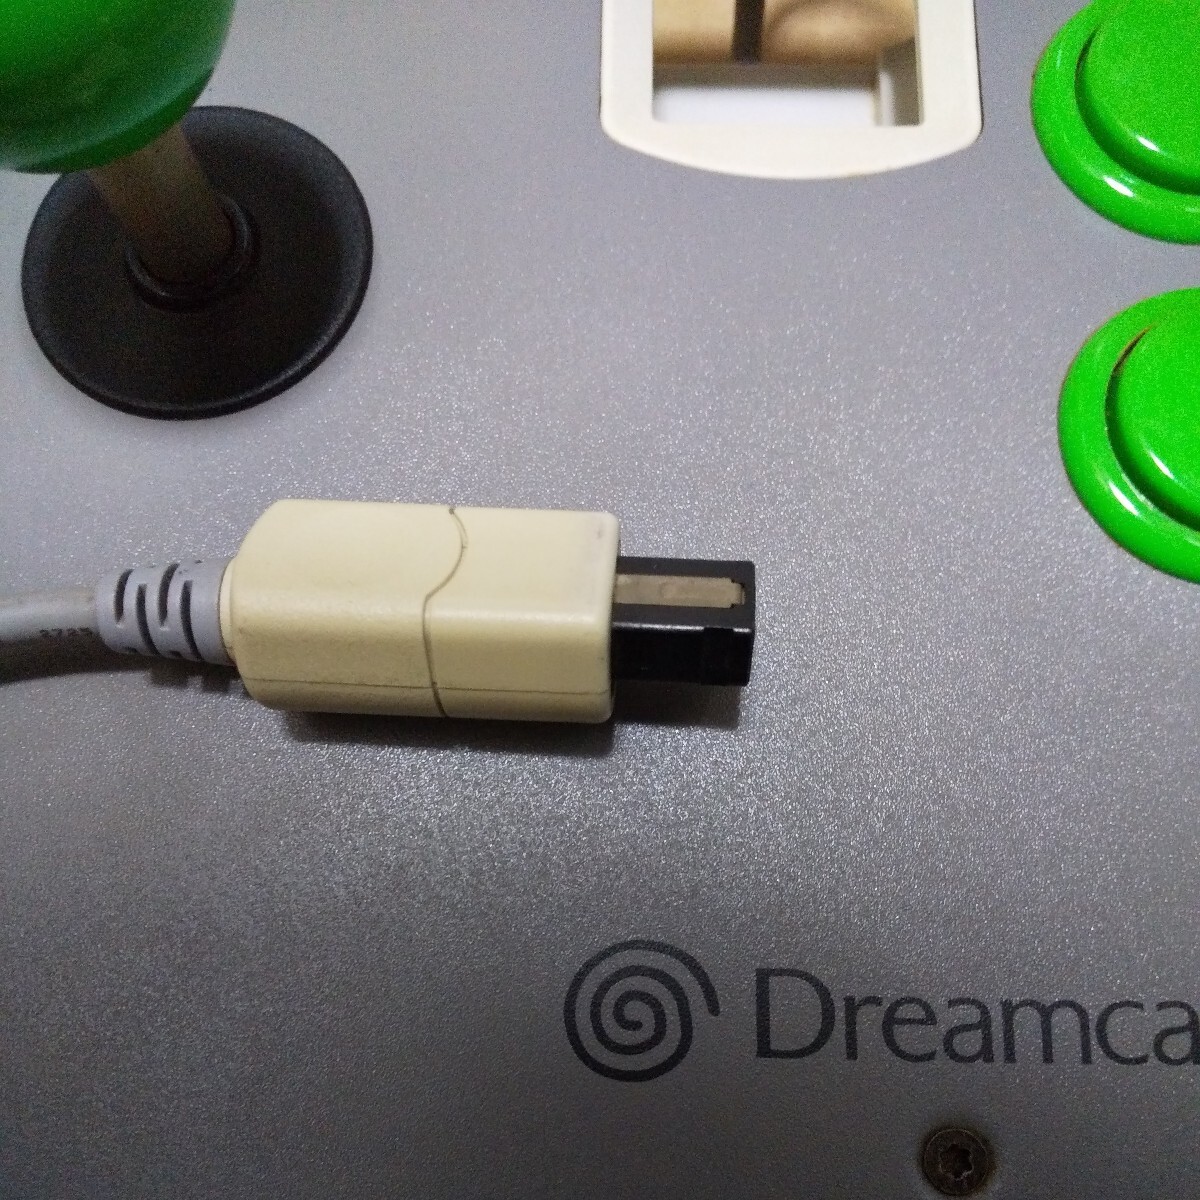  Dreamcast аркада палочка DC б/у товар 